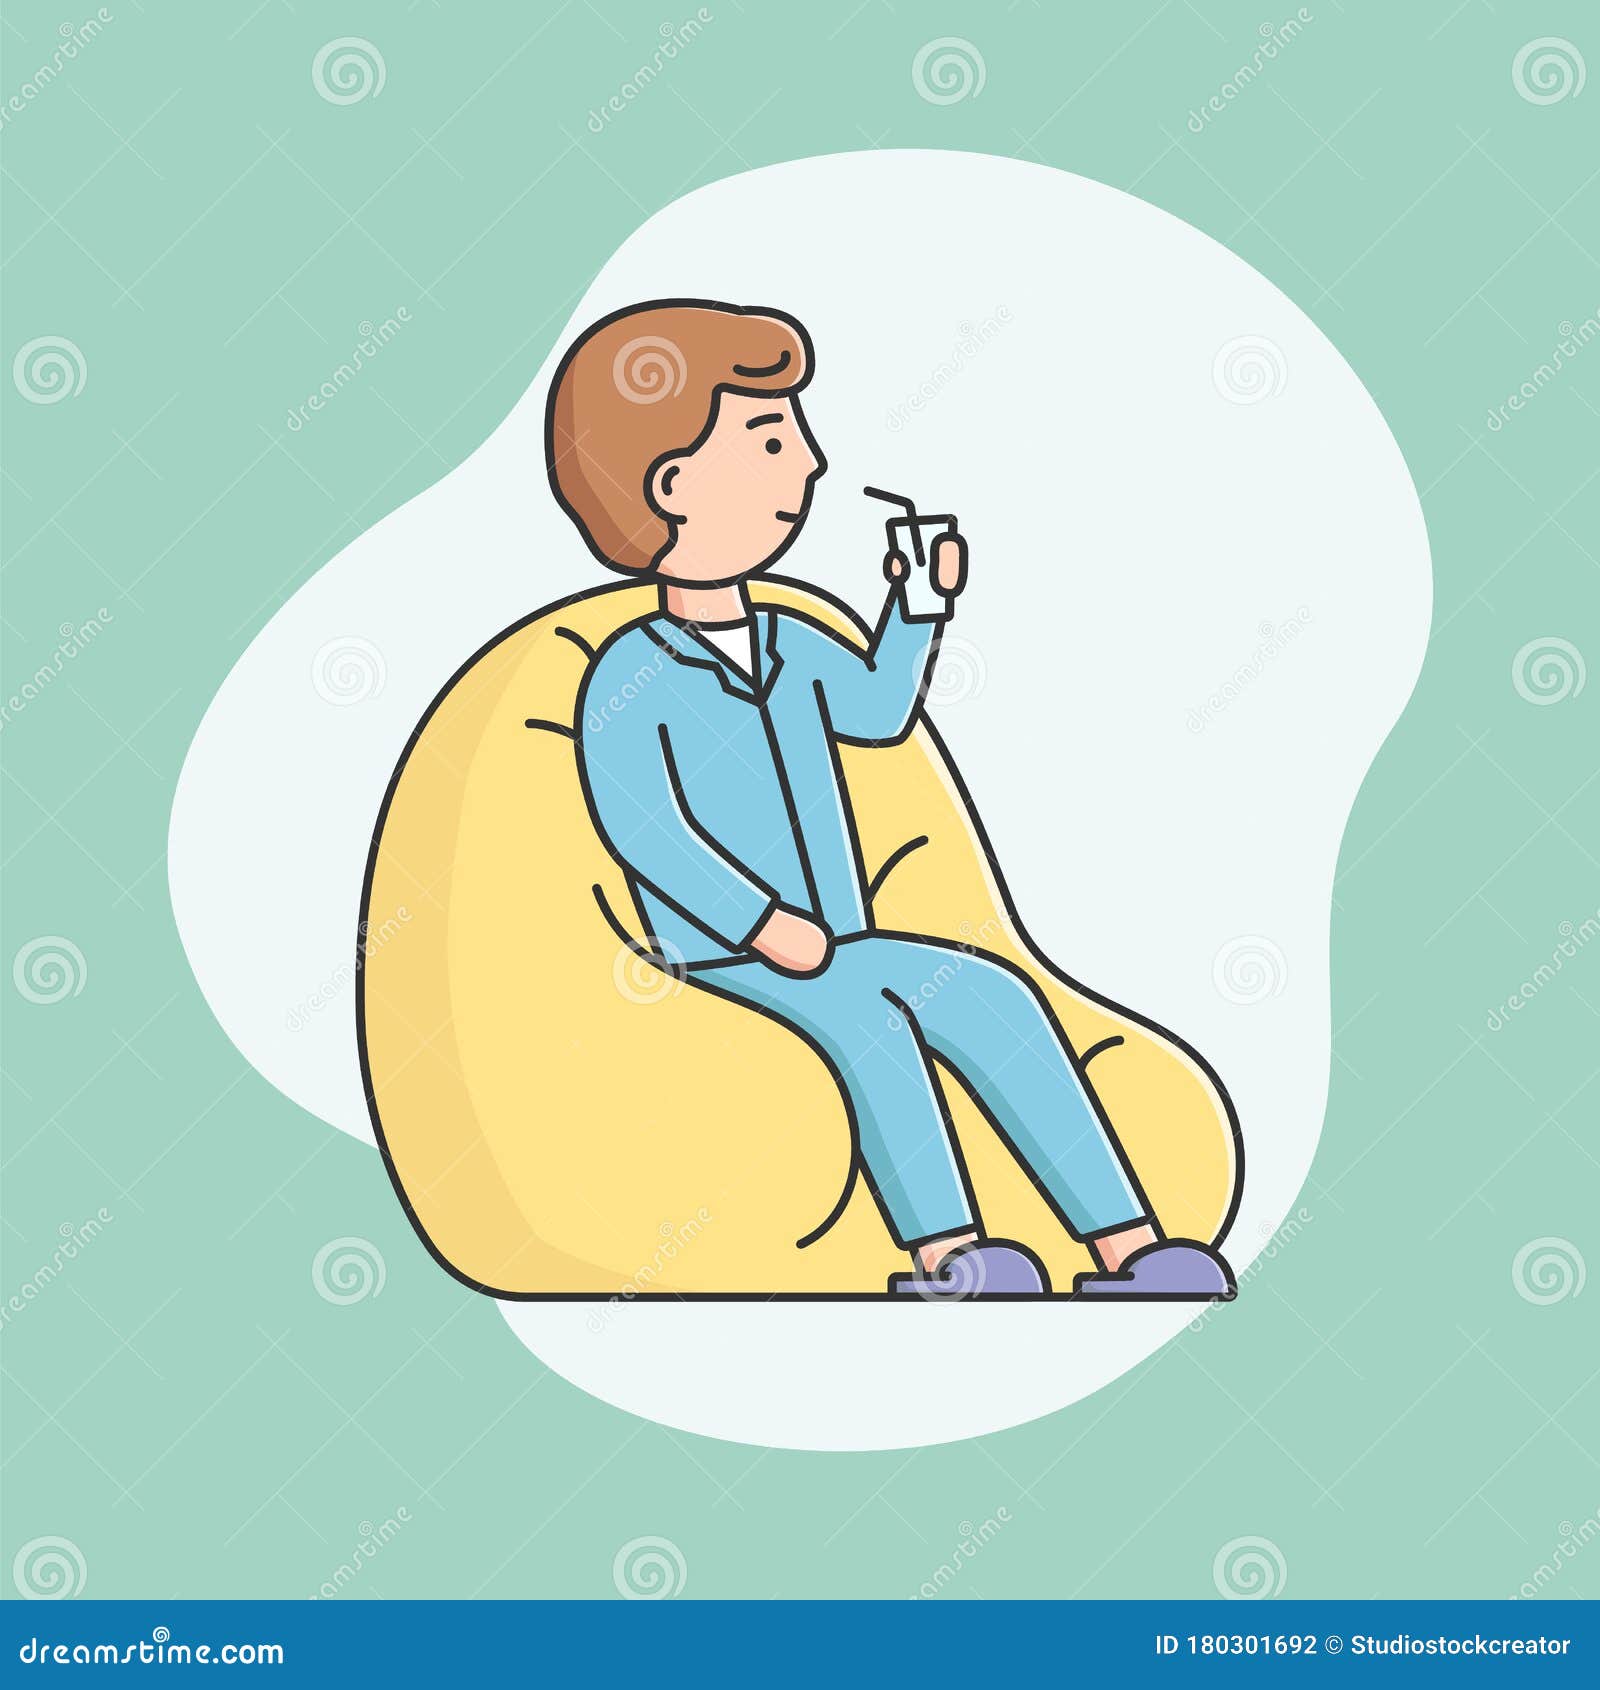 Concepto De Fiesta De Pijamas. Un Chico Joven Sentado En Un Taburete Acolchado Y Tomando Un Cóctel. Hombre Sonriente En Pijama Rel del Vector - Ilustración de lineal, adulto: 180301692